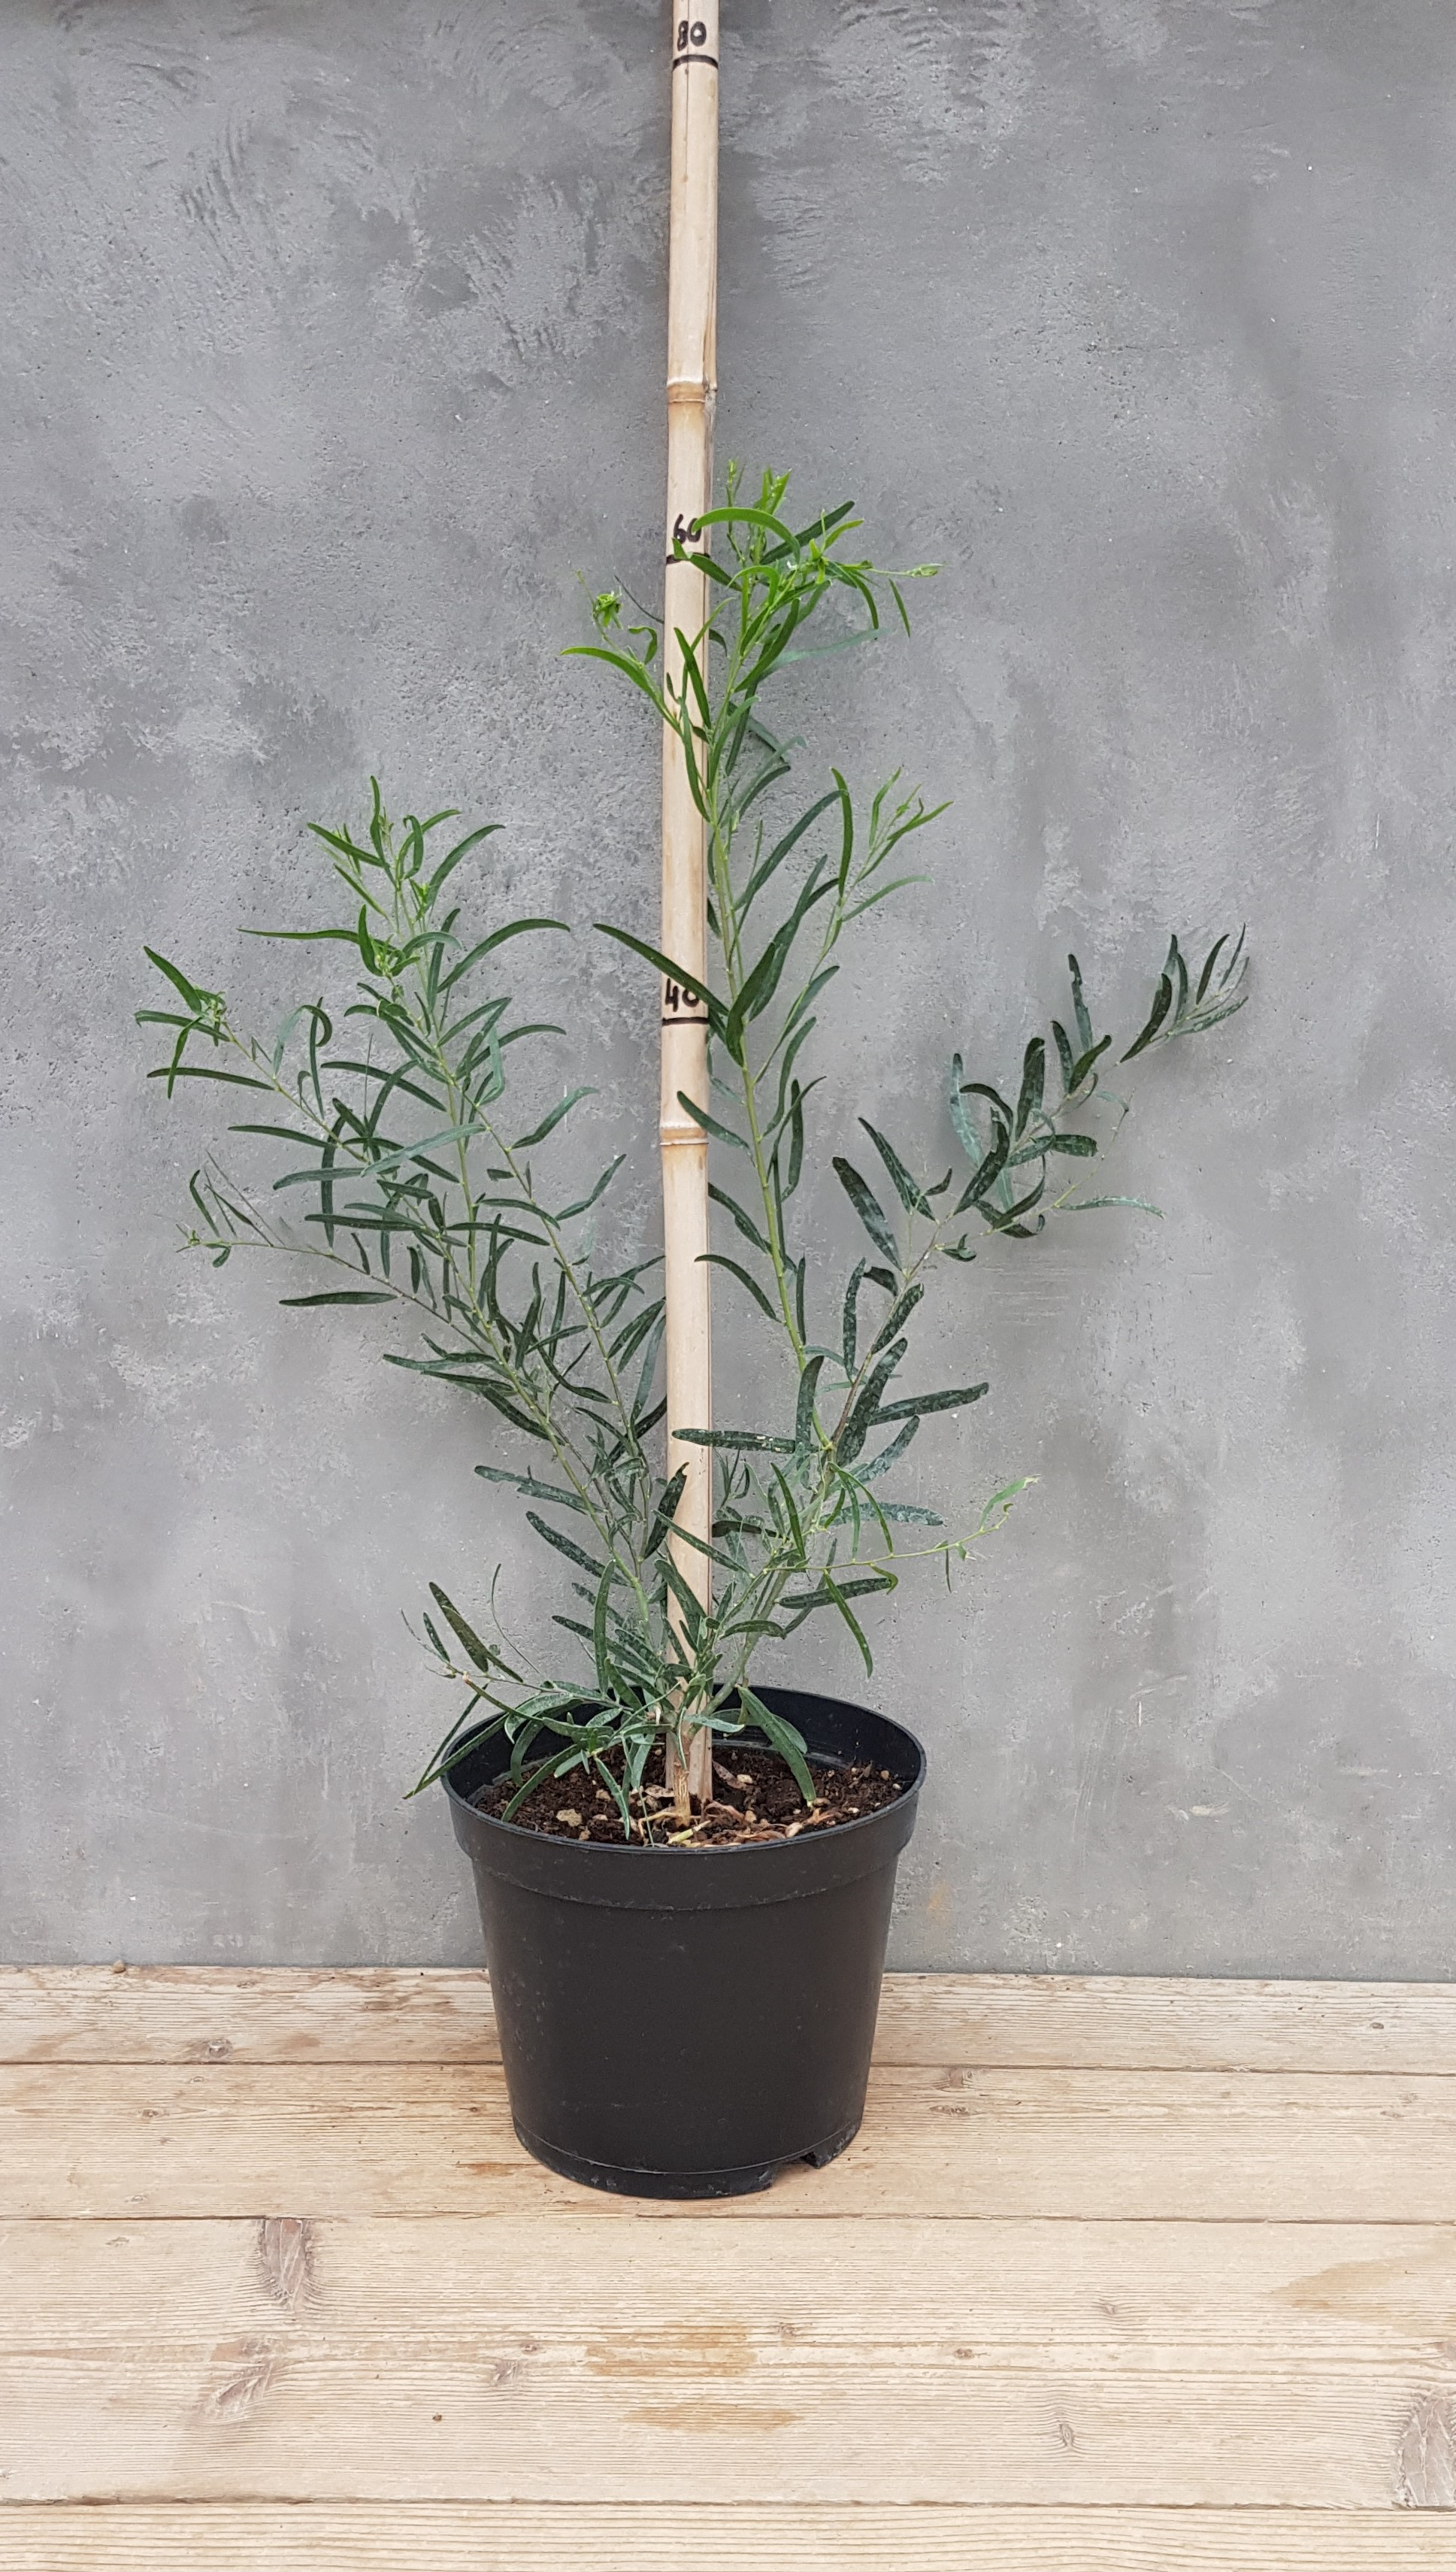 Acacia ligulata